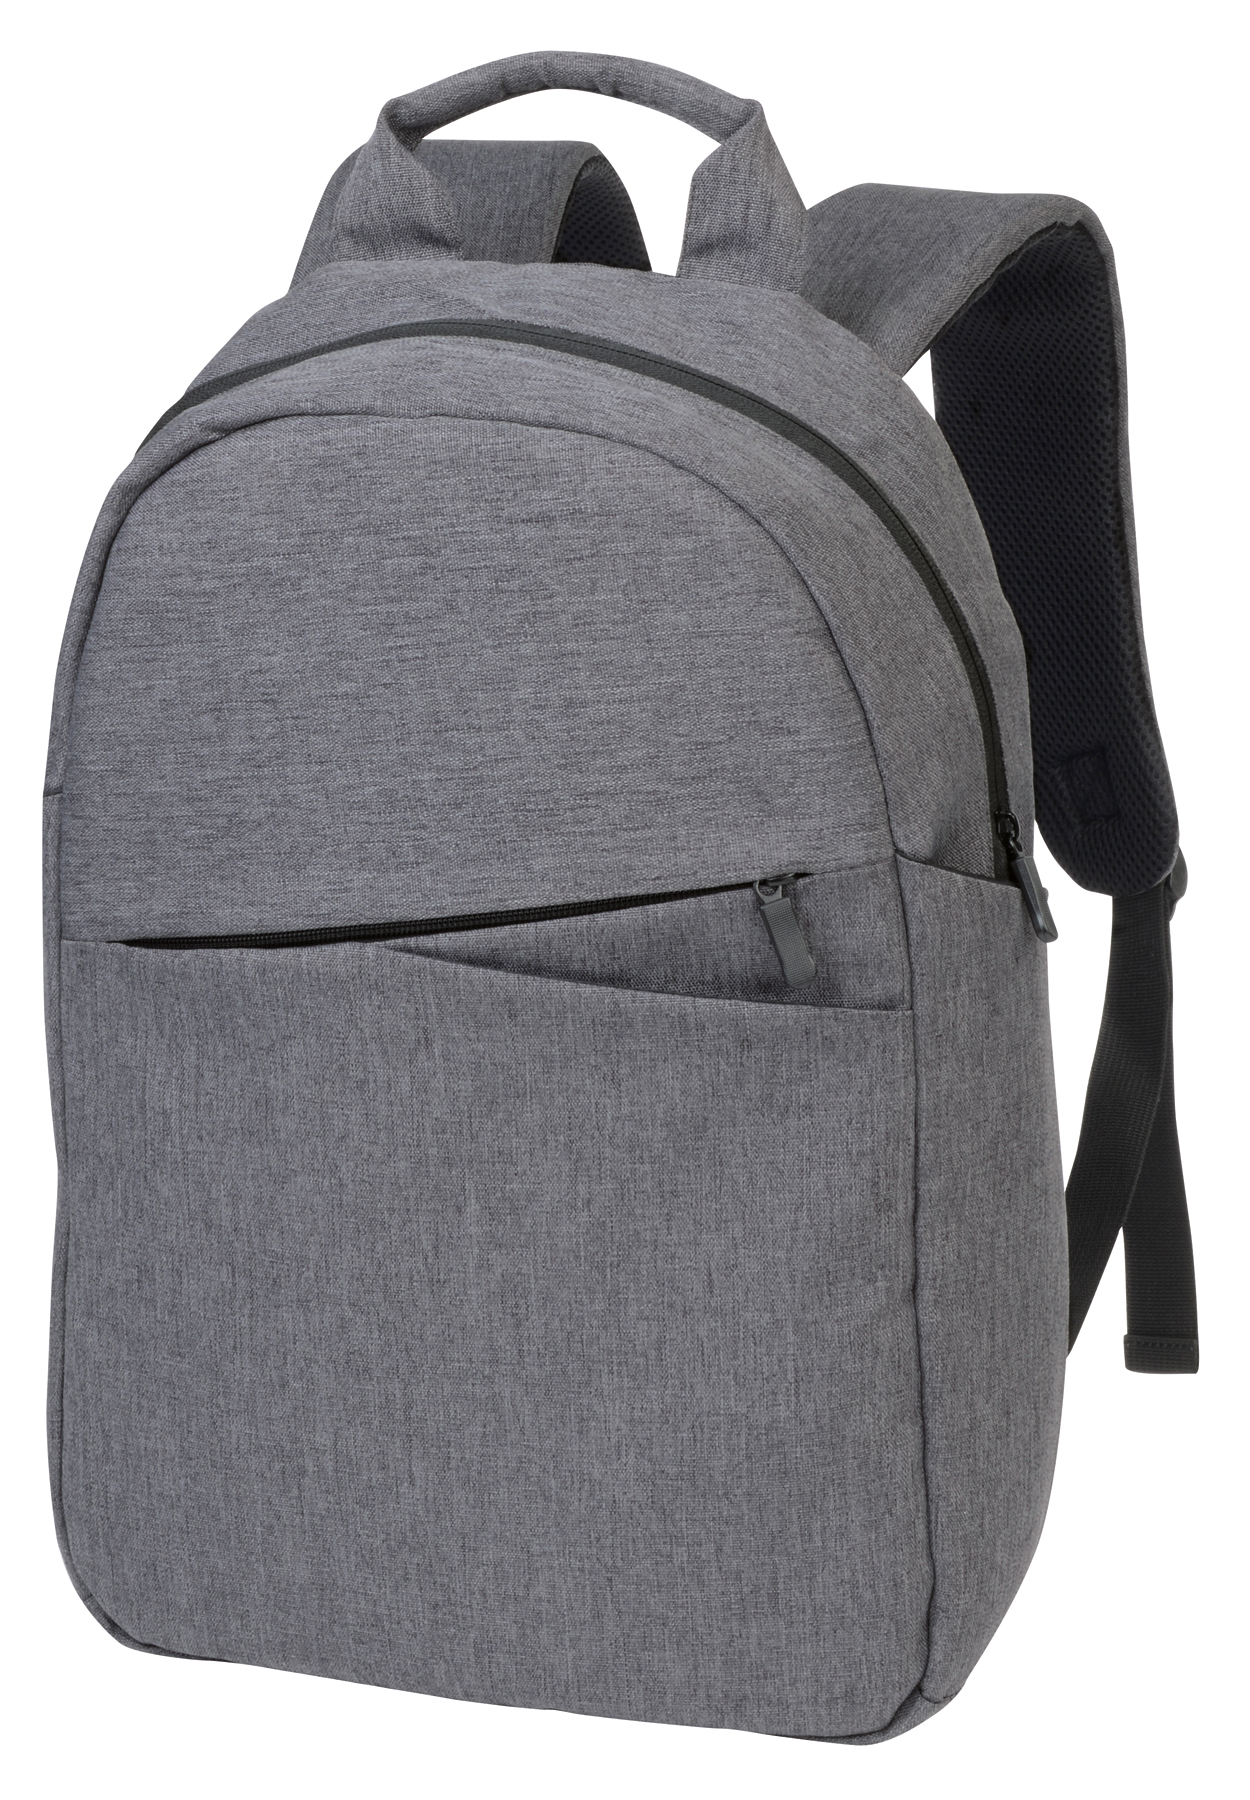 Backpack CAMBRIDGE - grey